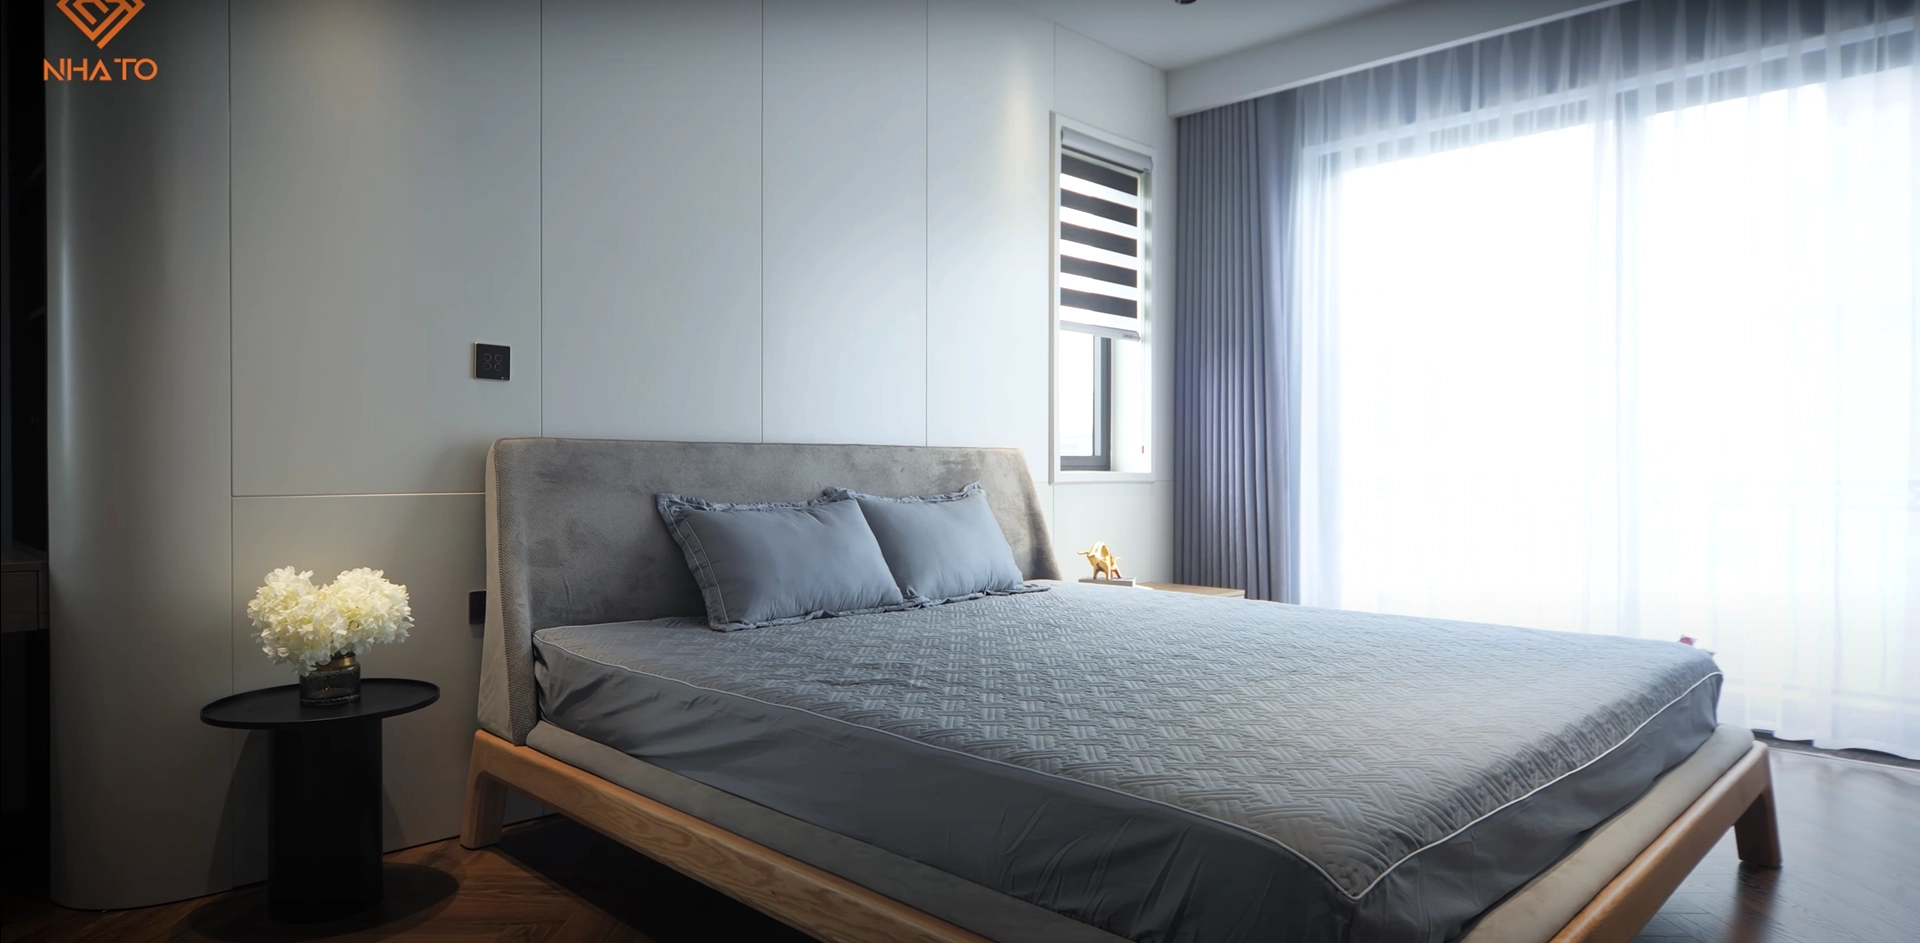  Phòng ngủ tại tầng 4 có thiết kế hiện đại với gam màu trung tính giống các tầng dưới.